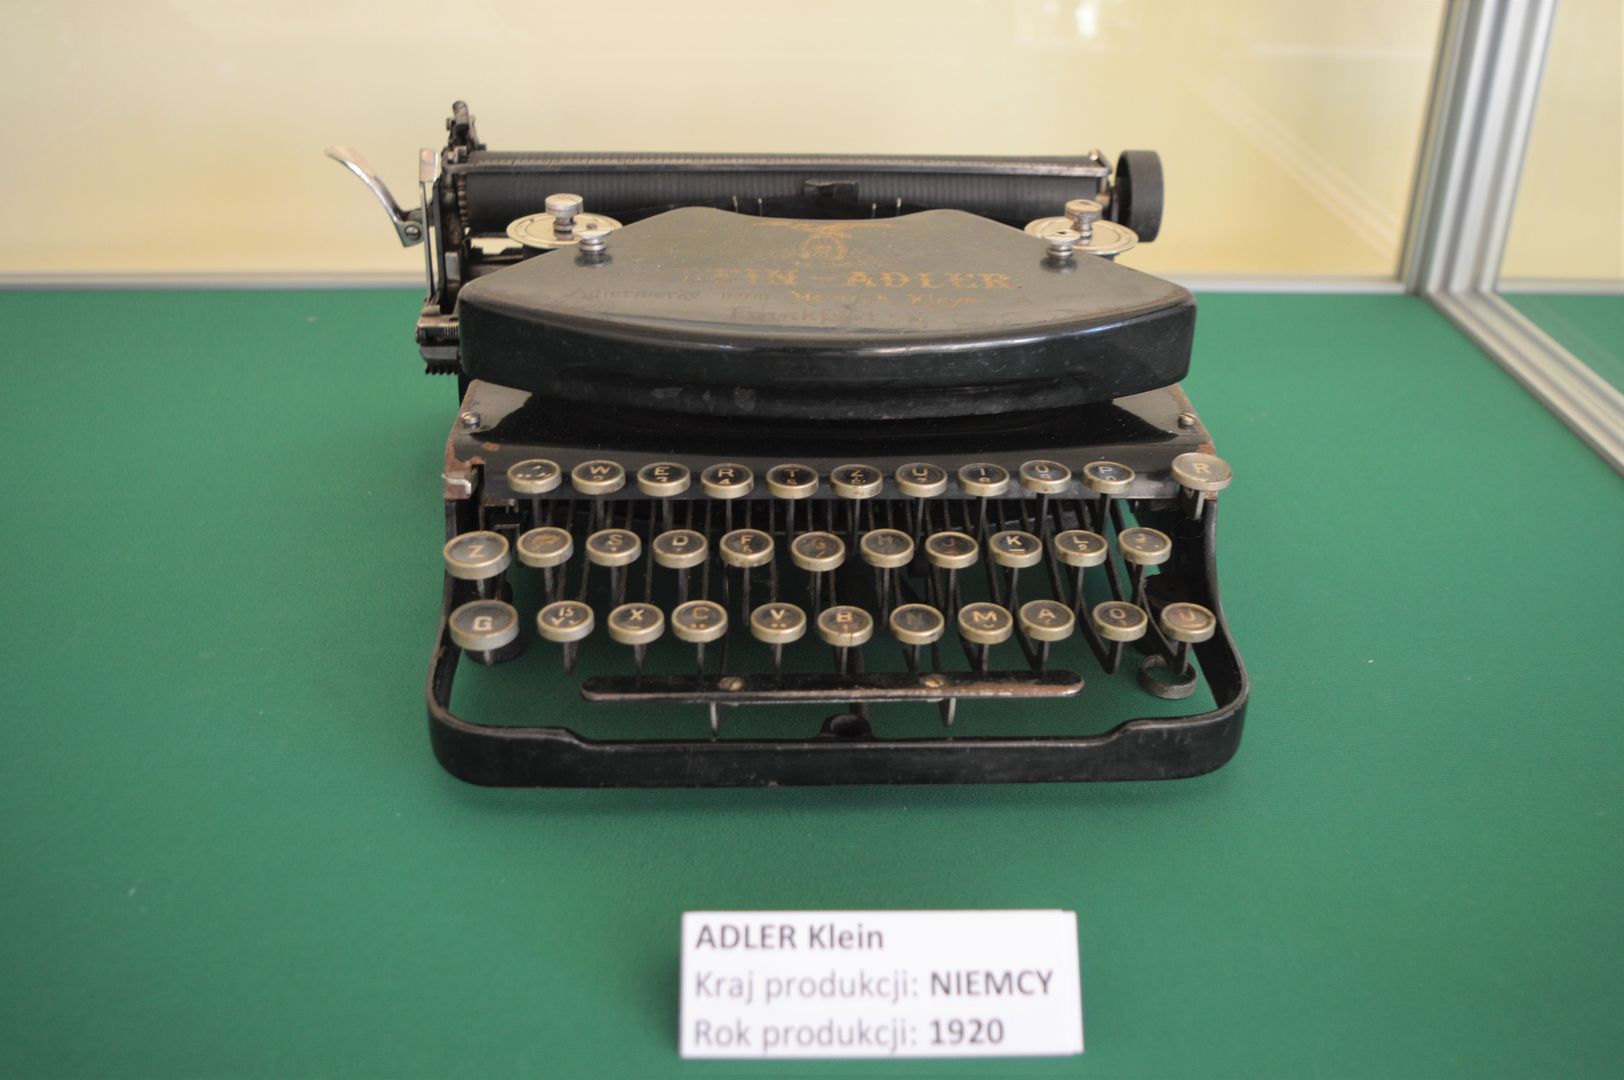 Zdjęcie przedstawia zabytkową maszynę do pisania Adler Klein